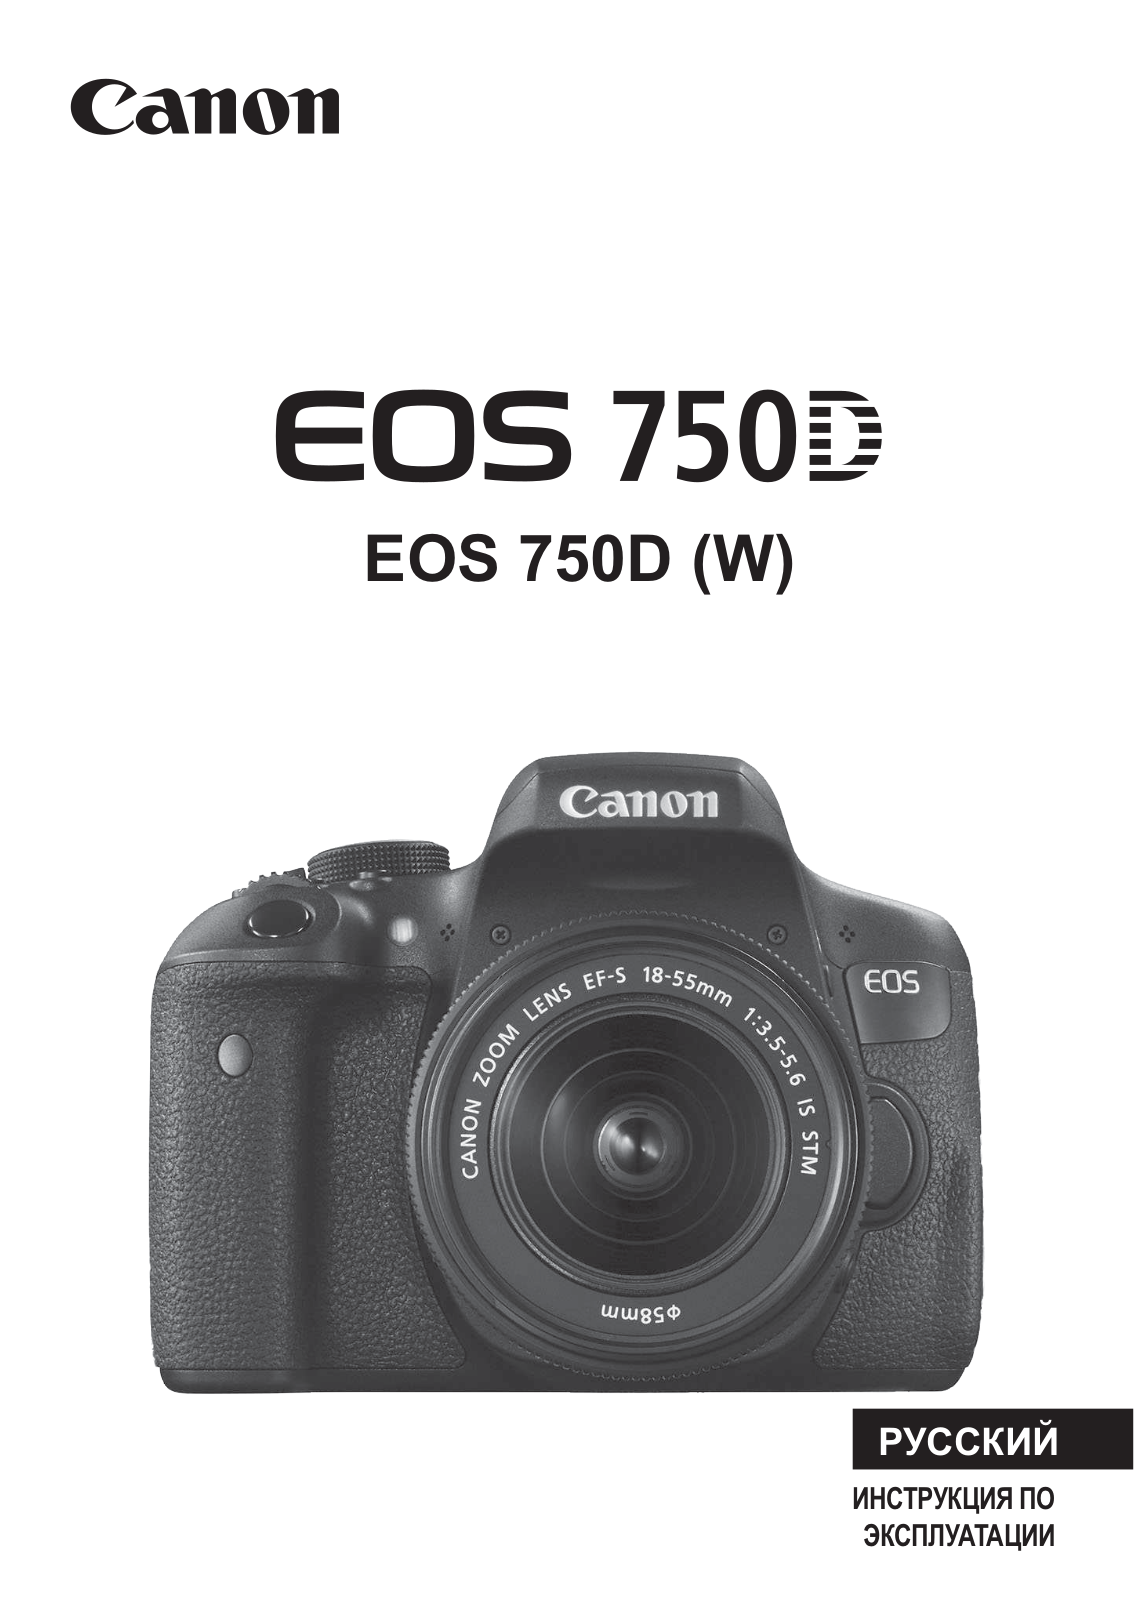 Canon EOS 750D body User Manual